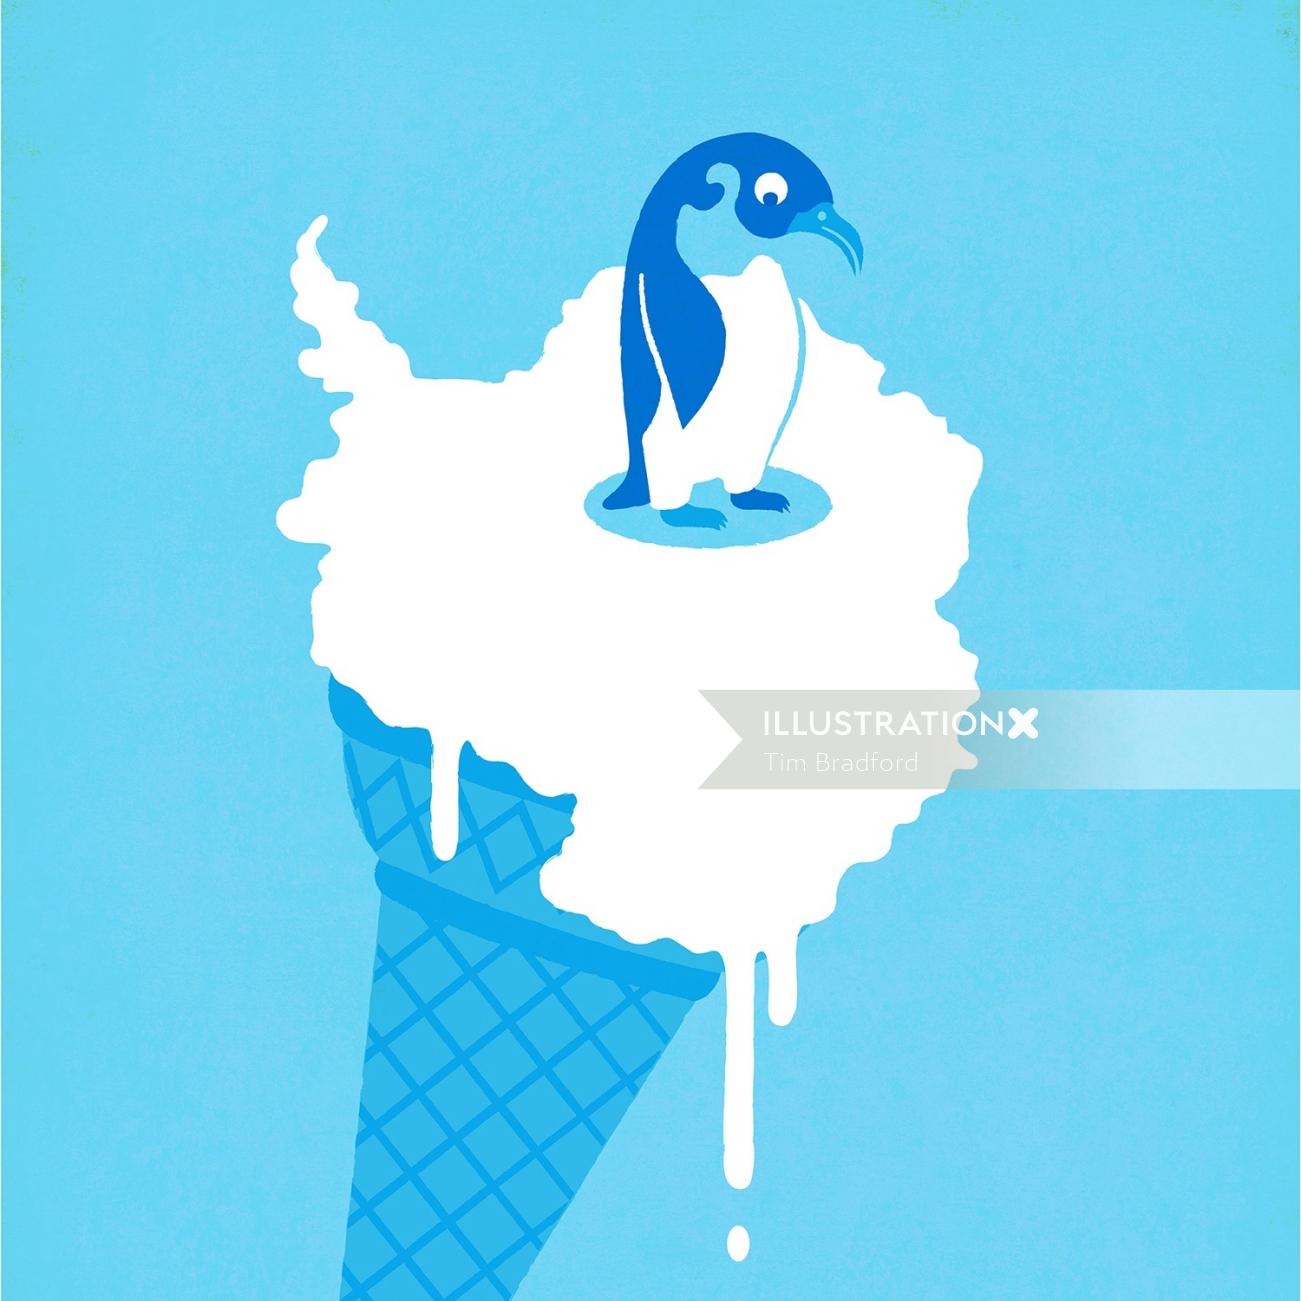 アイスクリームの上に座っているペンギンの図解